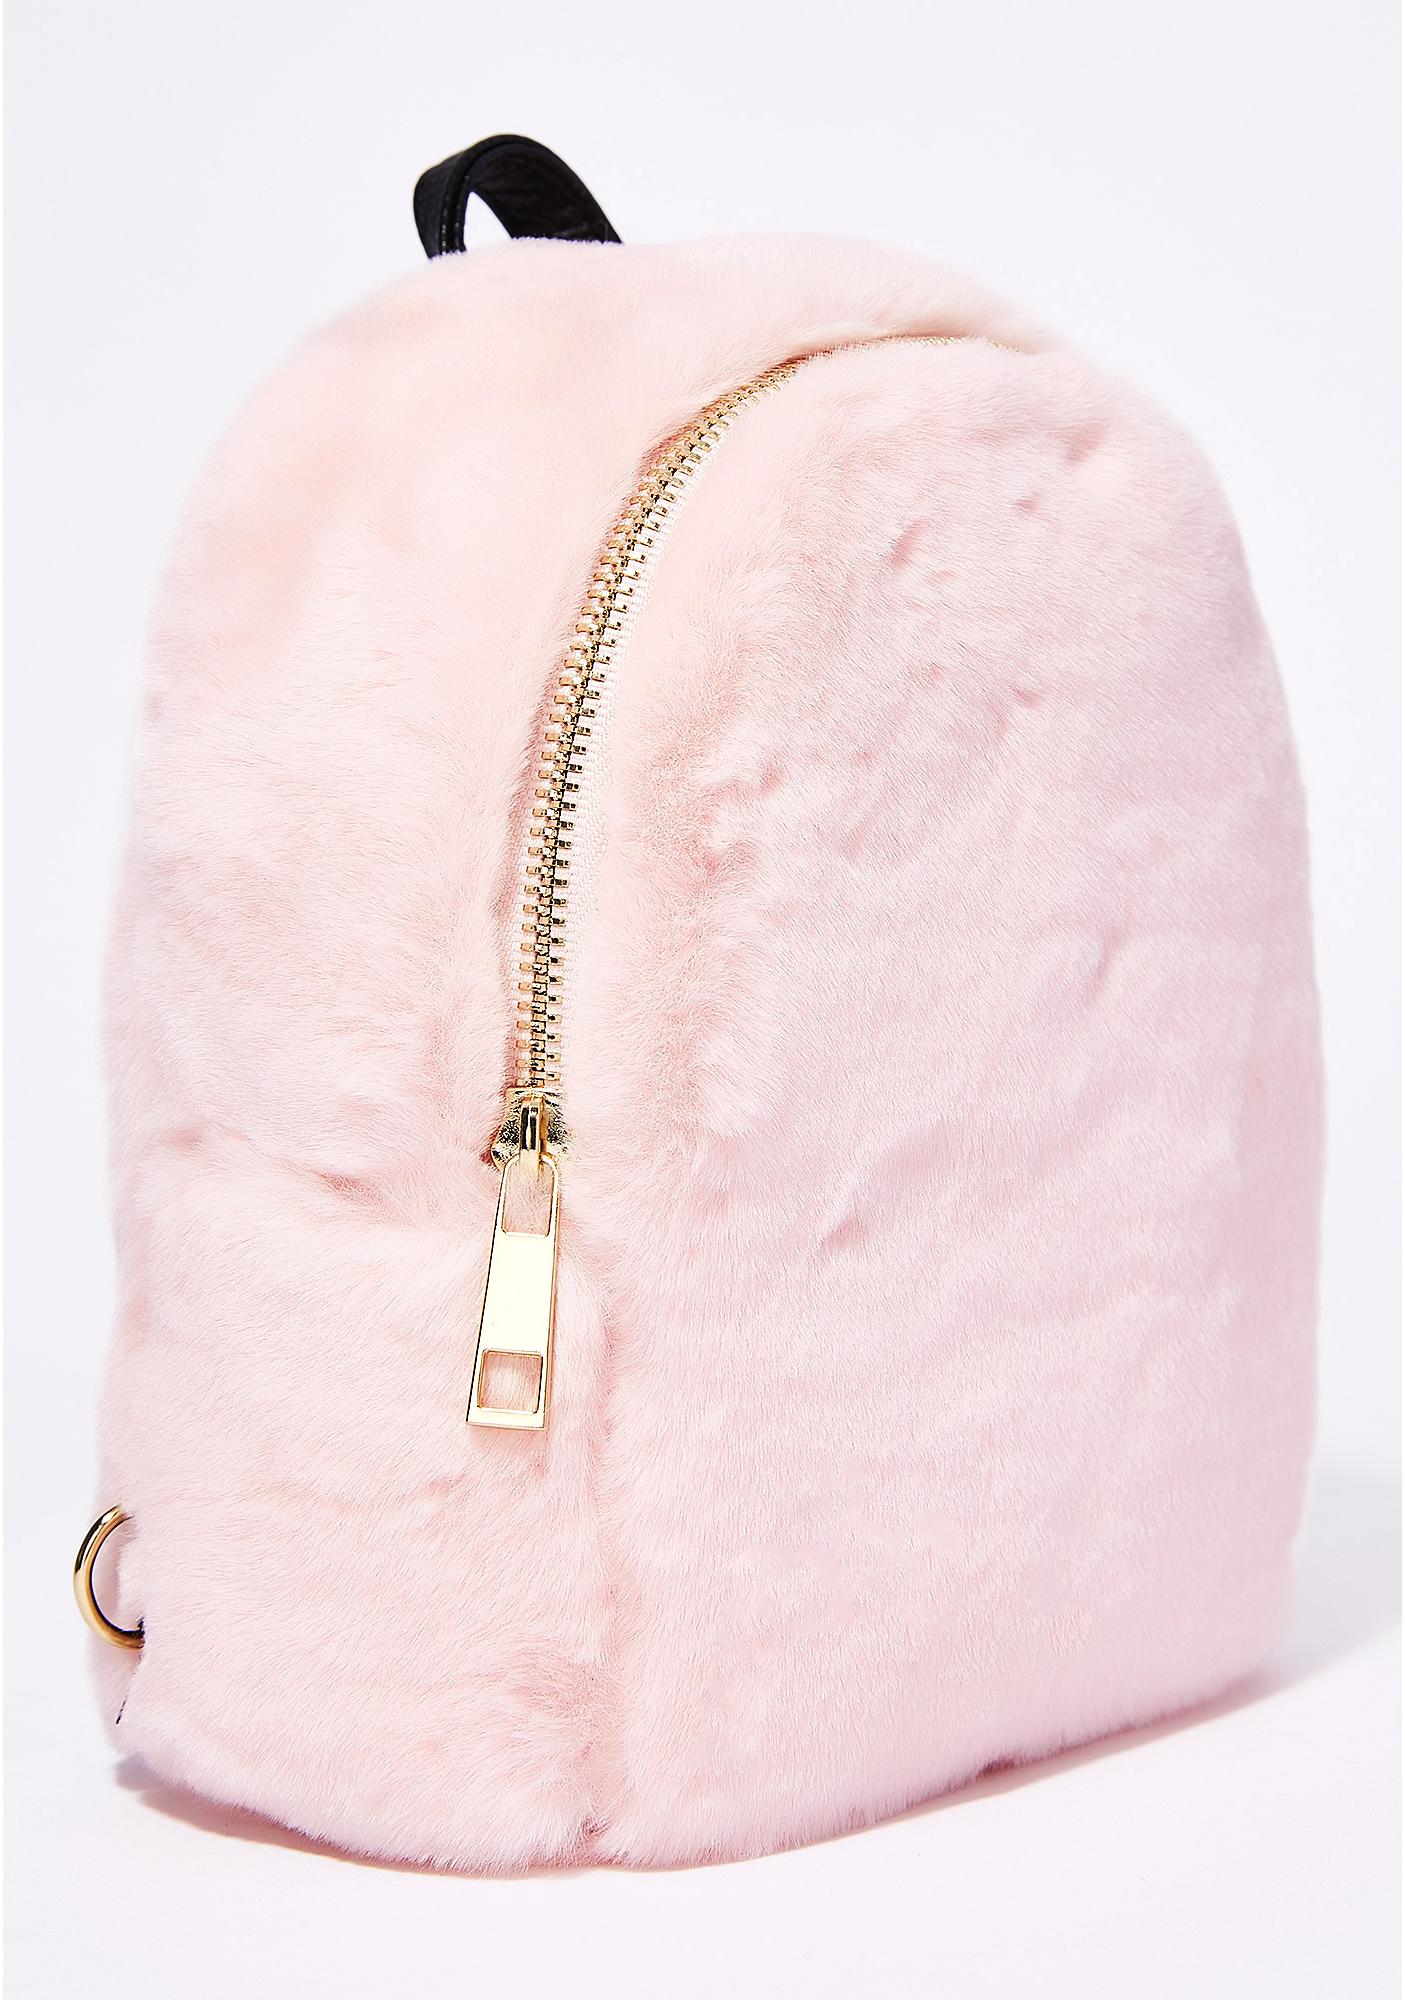 Fuzzy Mini Pink Backpack | Dolls Kill